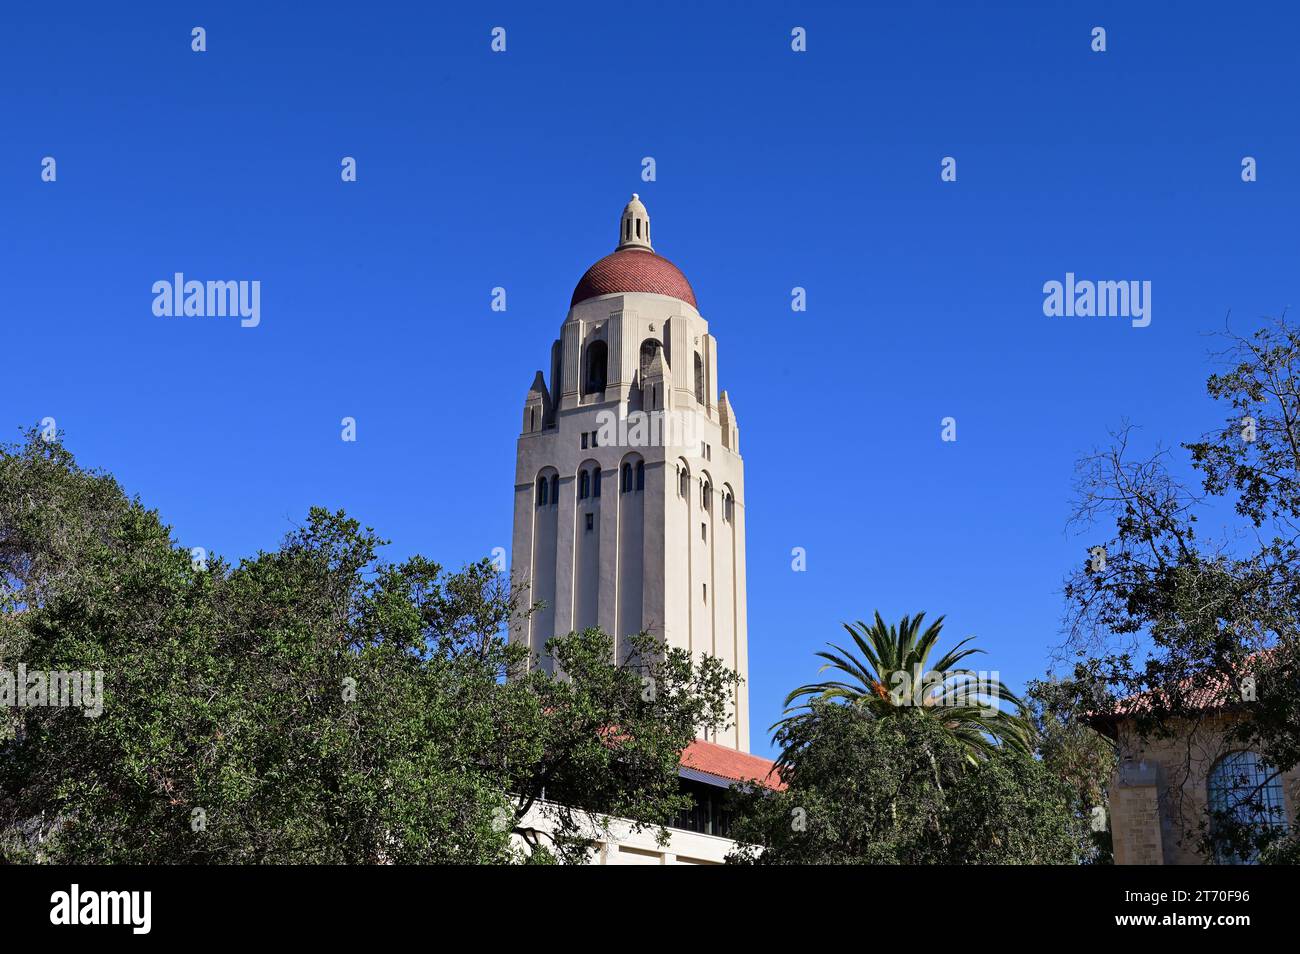 Stanford, Kalifornien, USA. Hoover Tower, ein Wahrzeichen auf dem Campus der Stanford University. Stockfoto